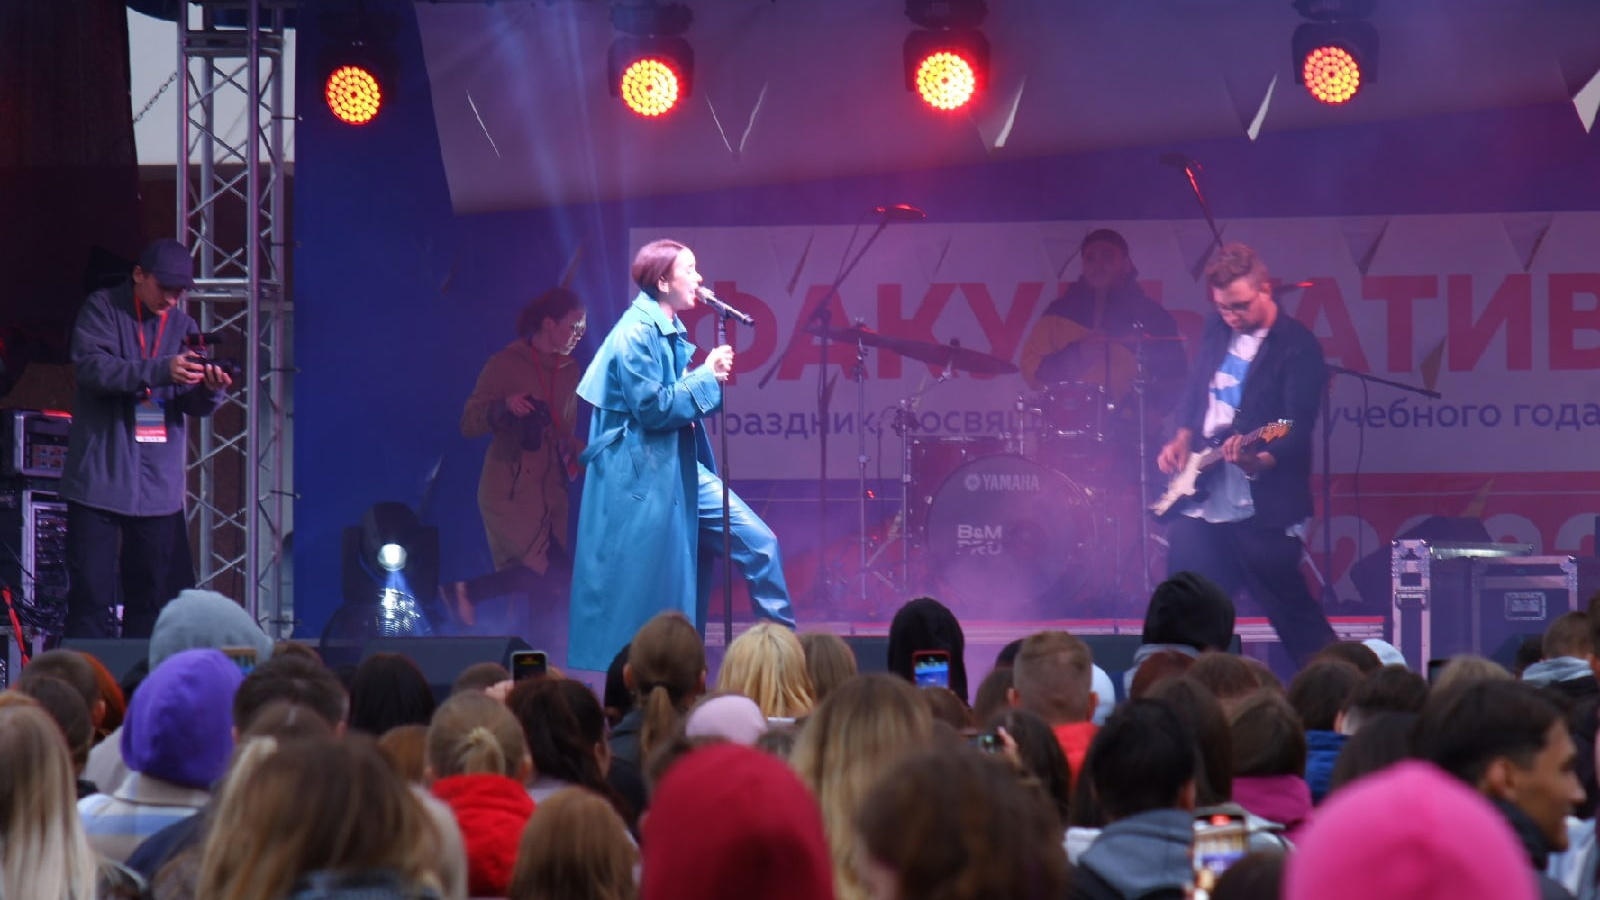 Жители Архангельска встретили 1 Сентября на концерте певицы Асии: фоторепортаж